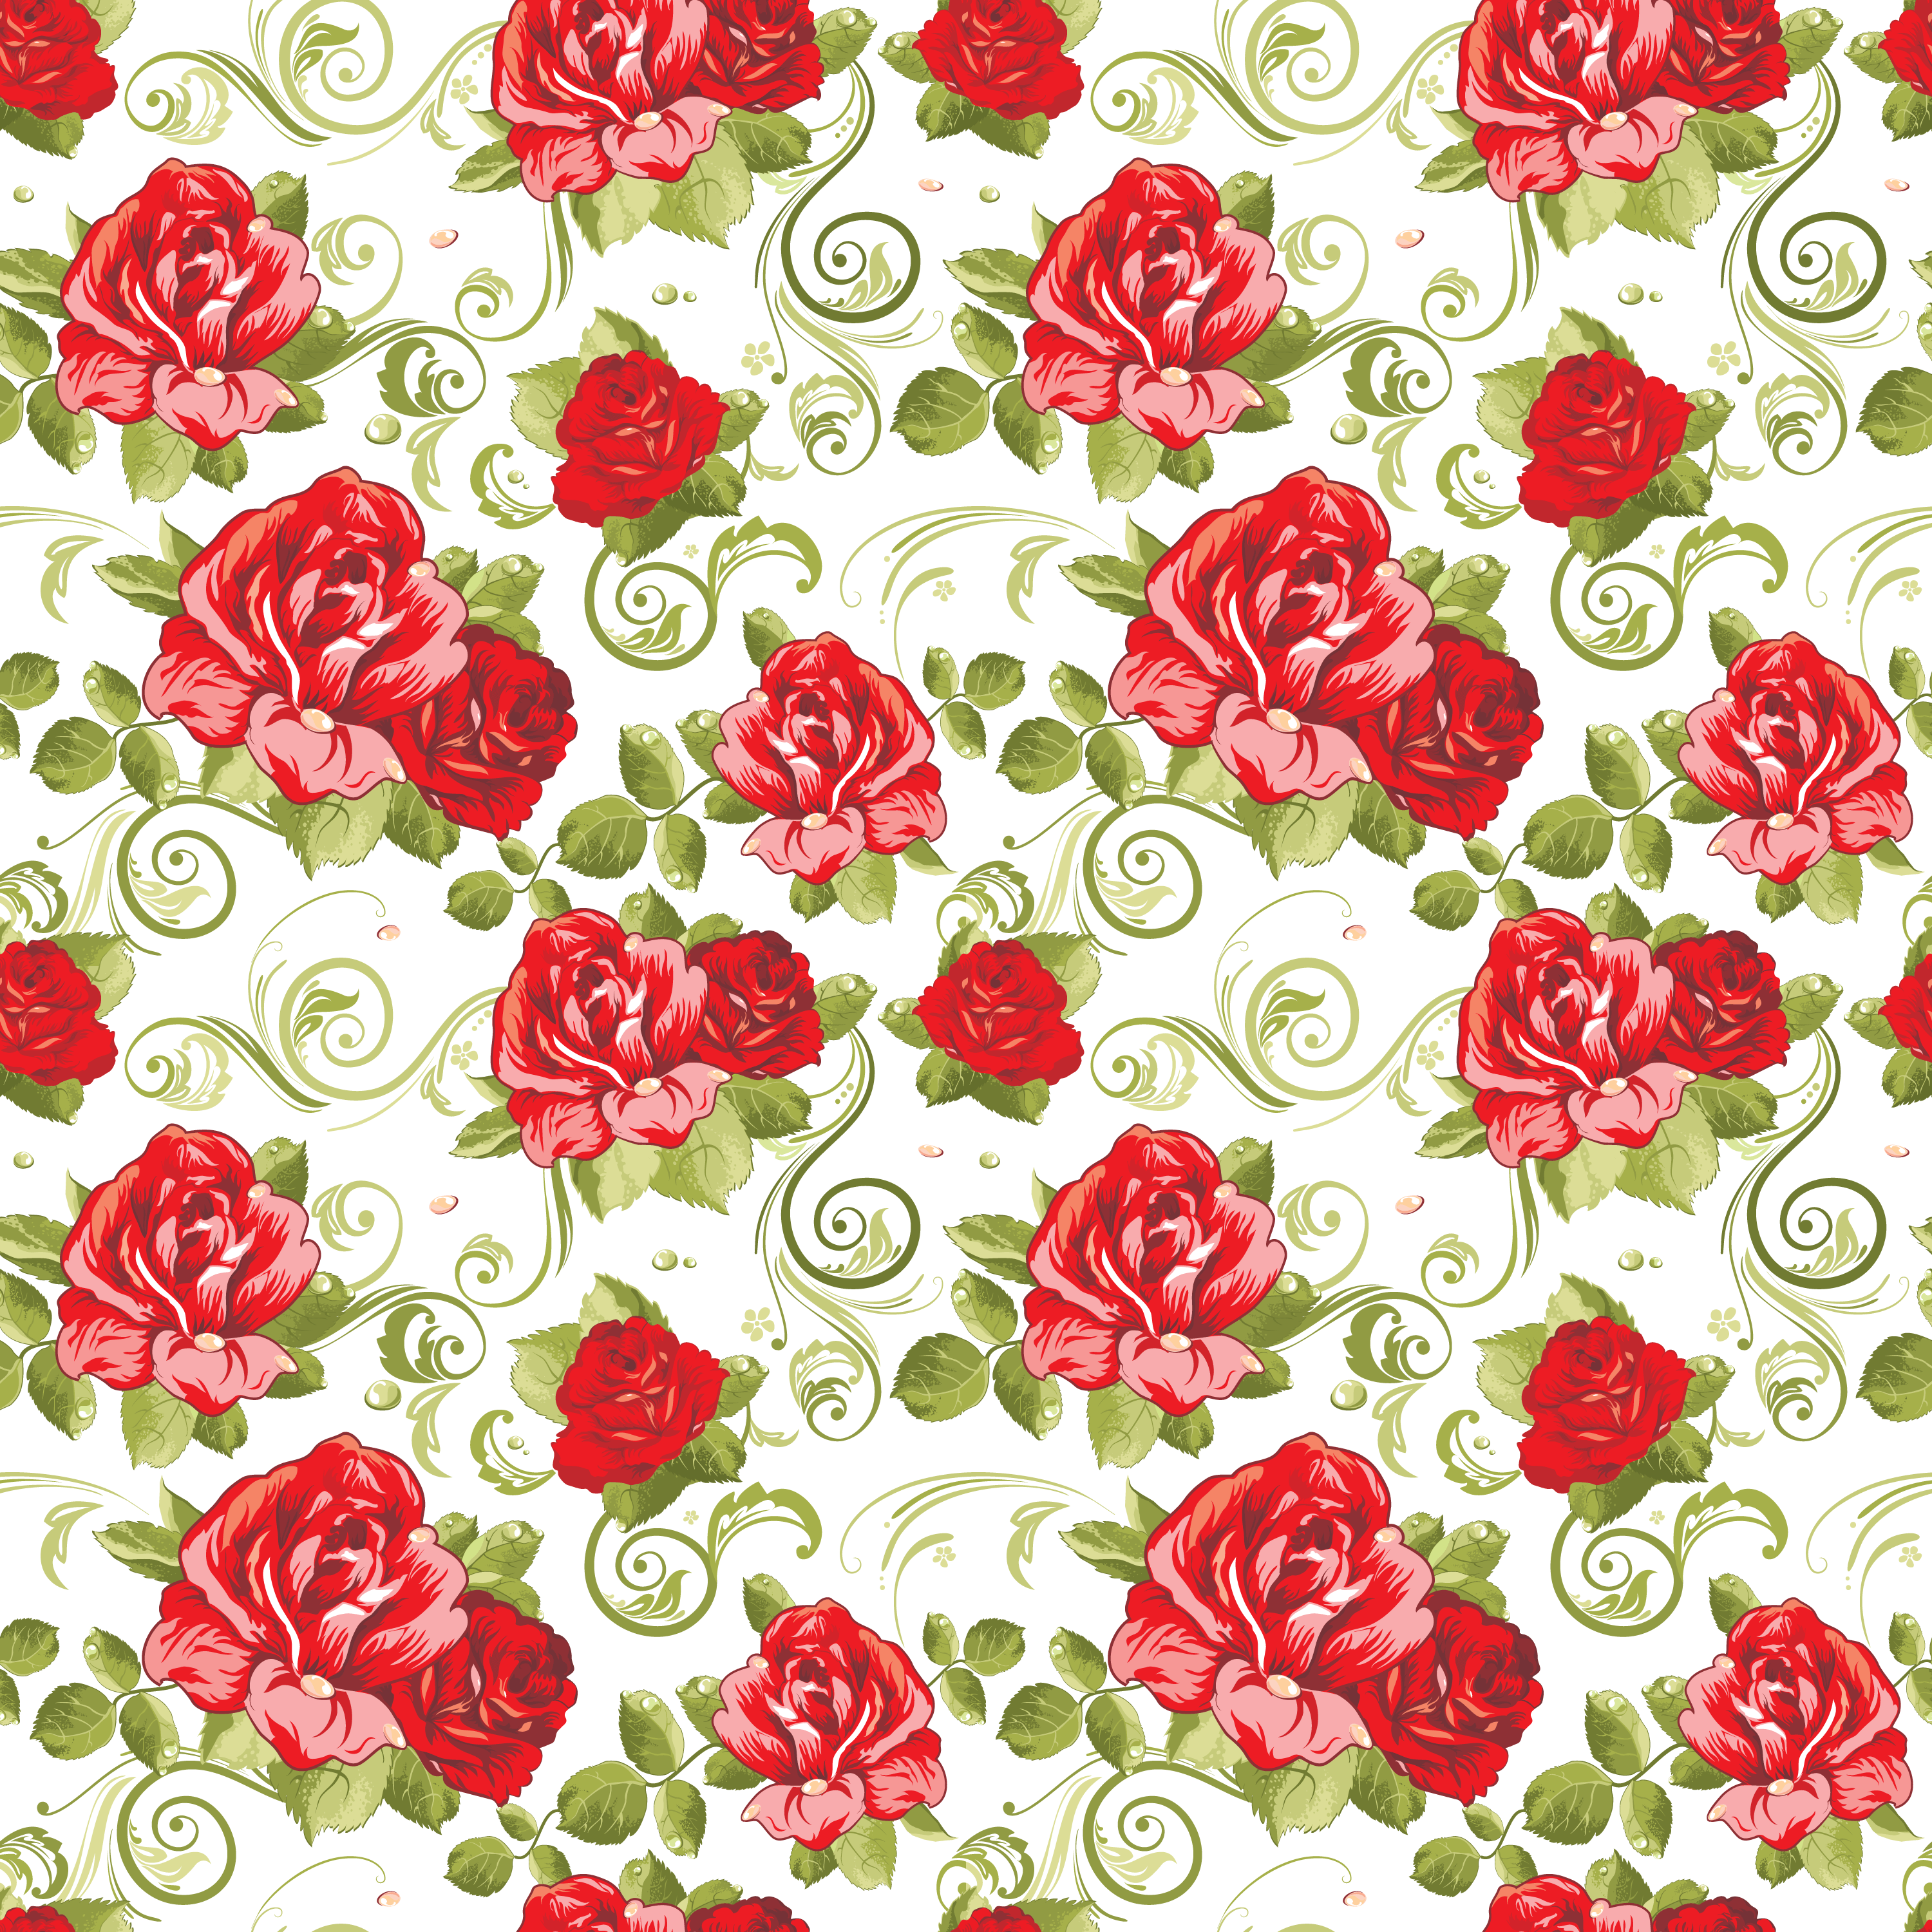 バラのイラスト 画像no 234 壁紙 赤いバラのパターン 無料のフリー素材集 百花繚乱